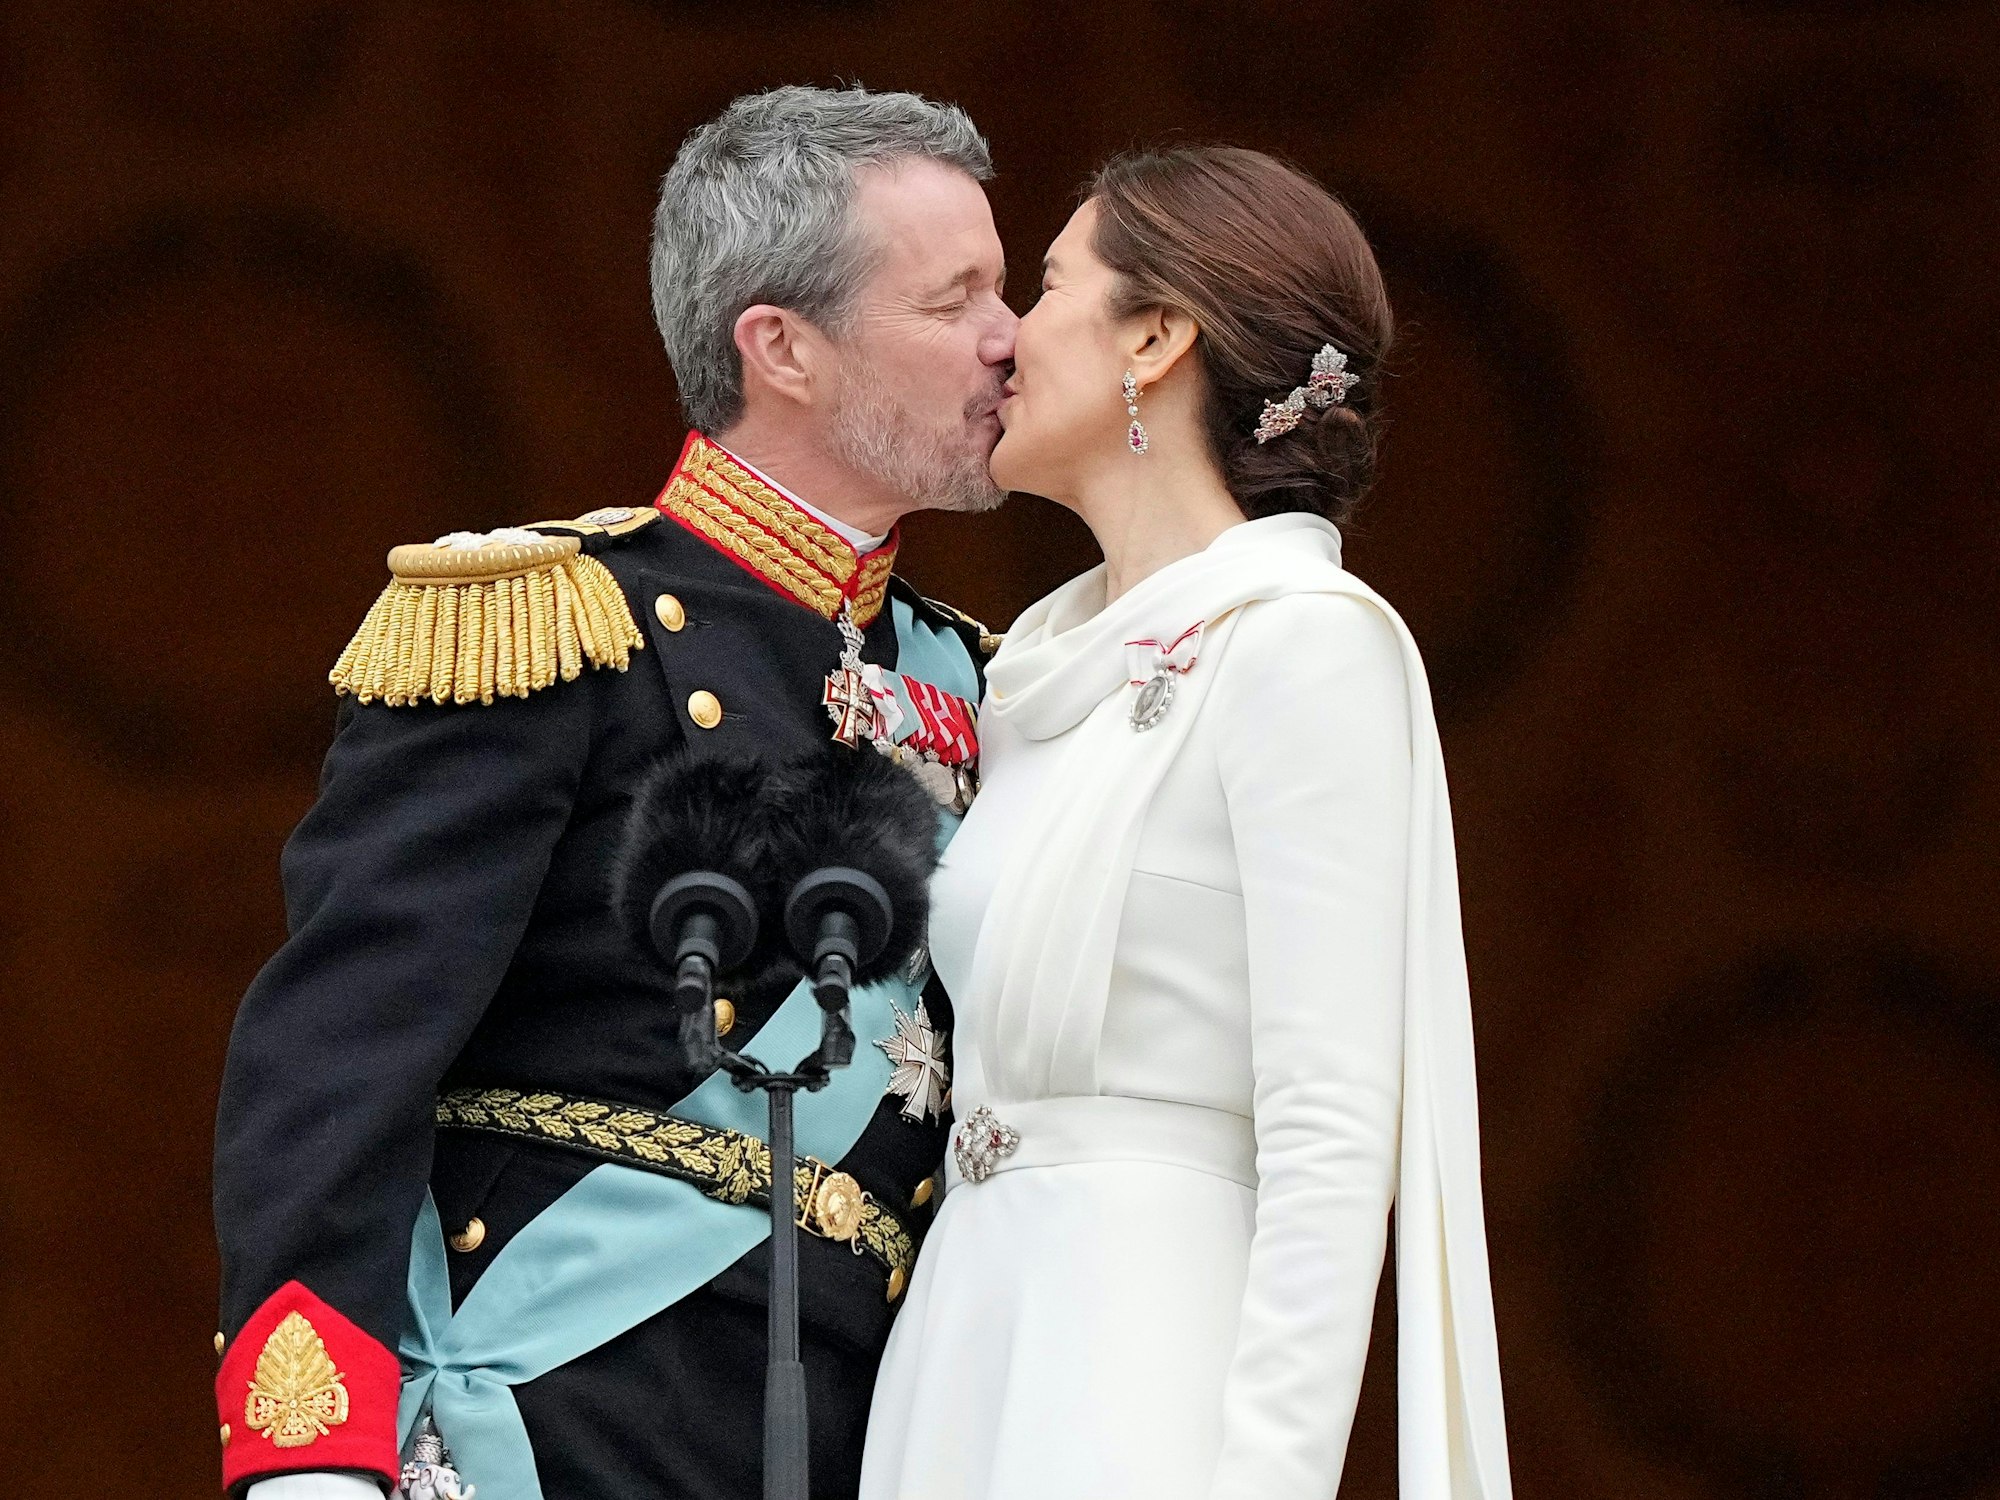 Dänemarks König Frederik X. küsst seine Frau, Dänemarks neue Königin Mary.